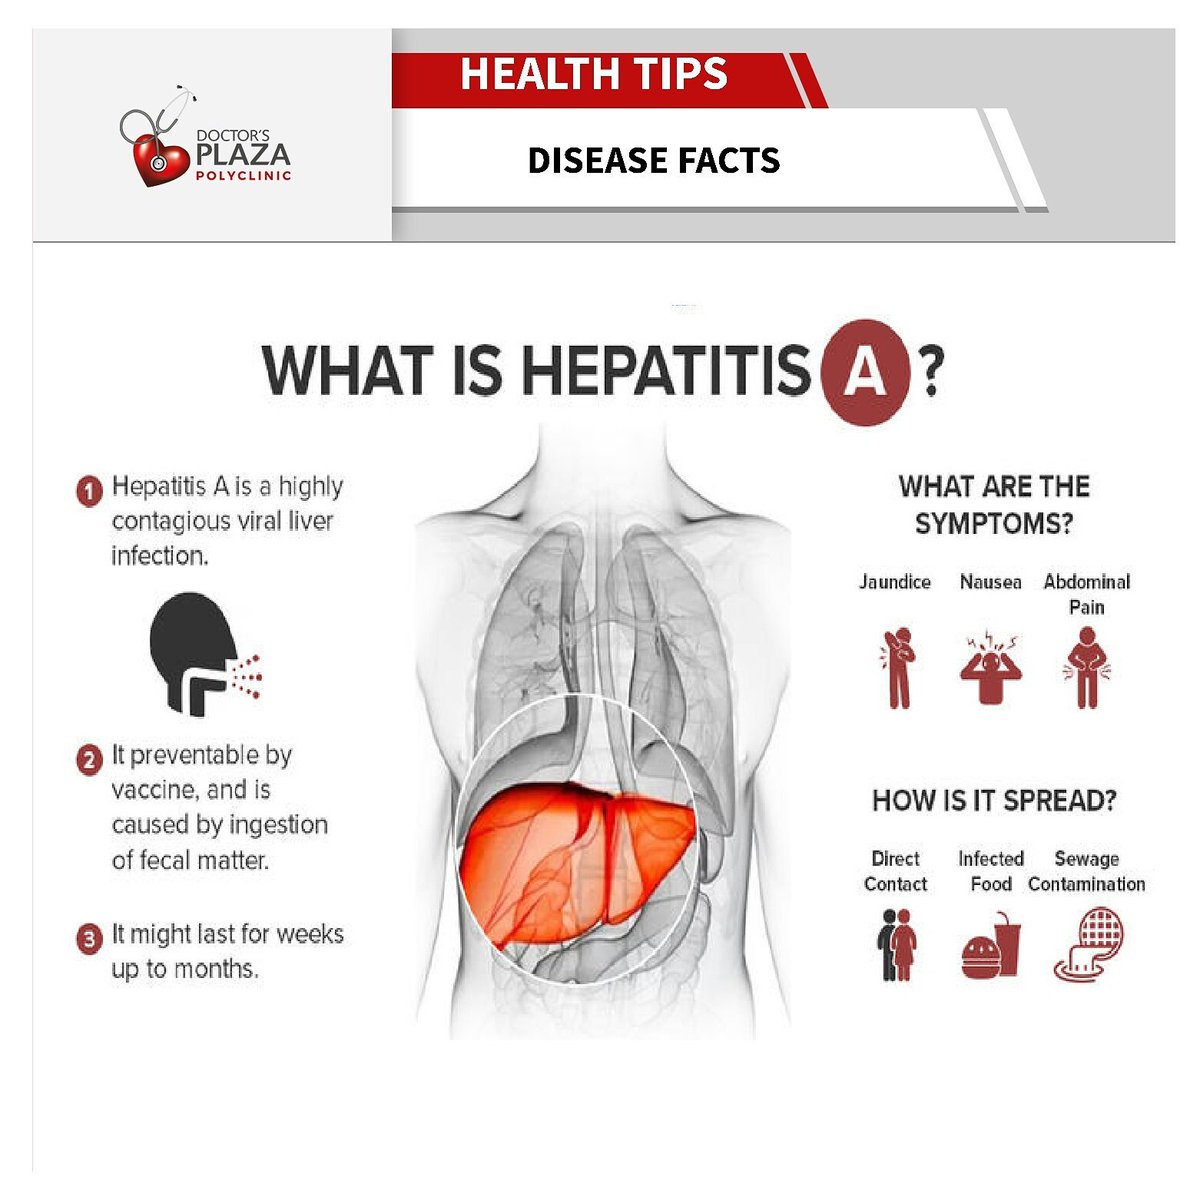 #herpatitisB #diseases #beware
#Healthcare #preventinfection 
#dondoozadoctorsplaza  #HealthTips